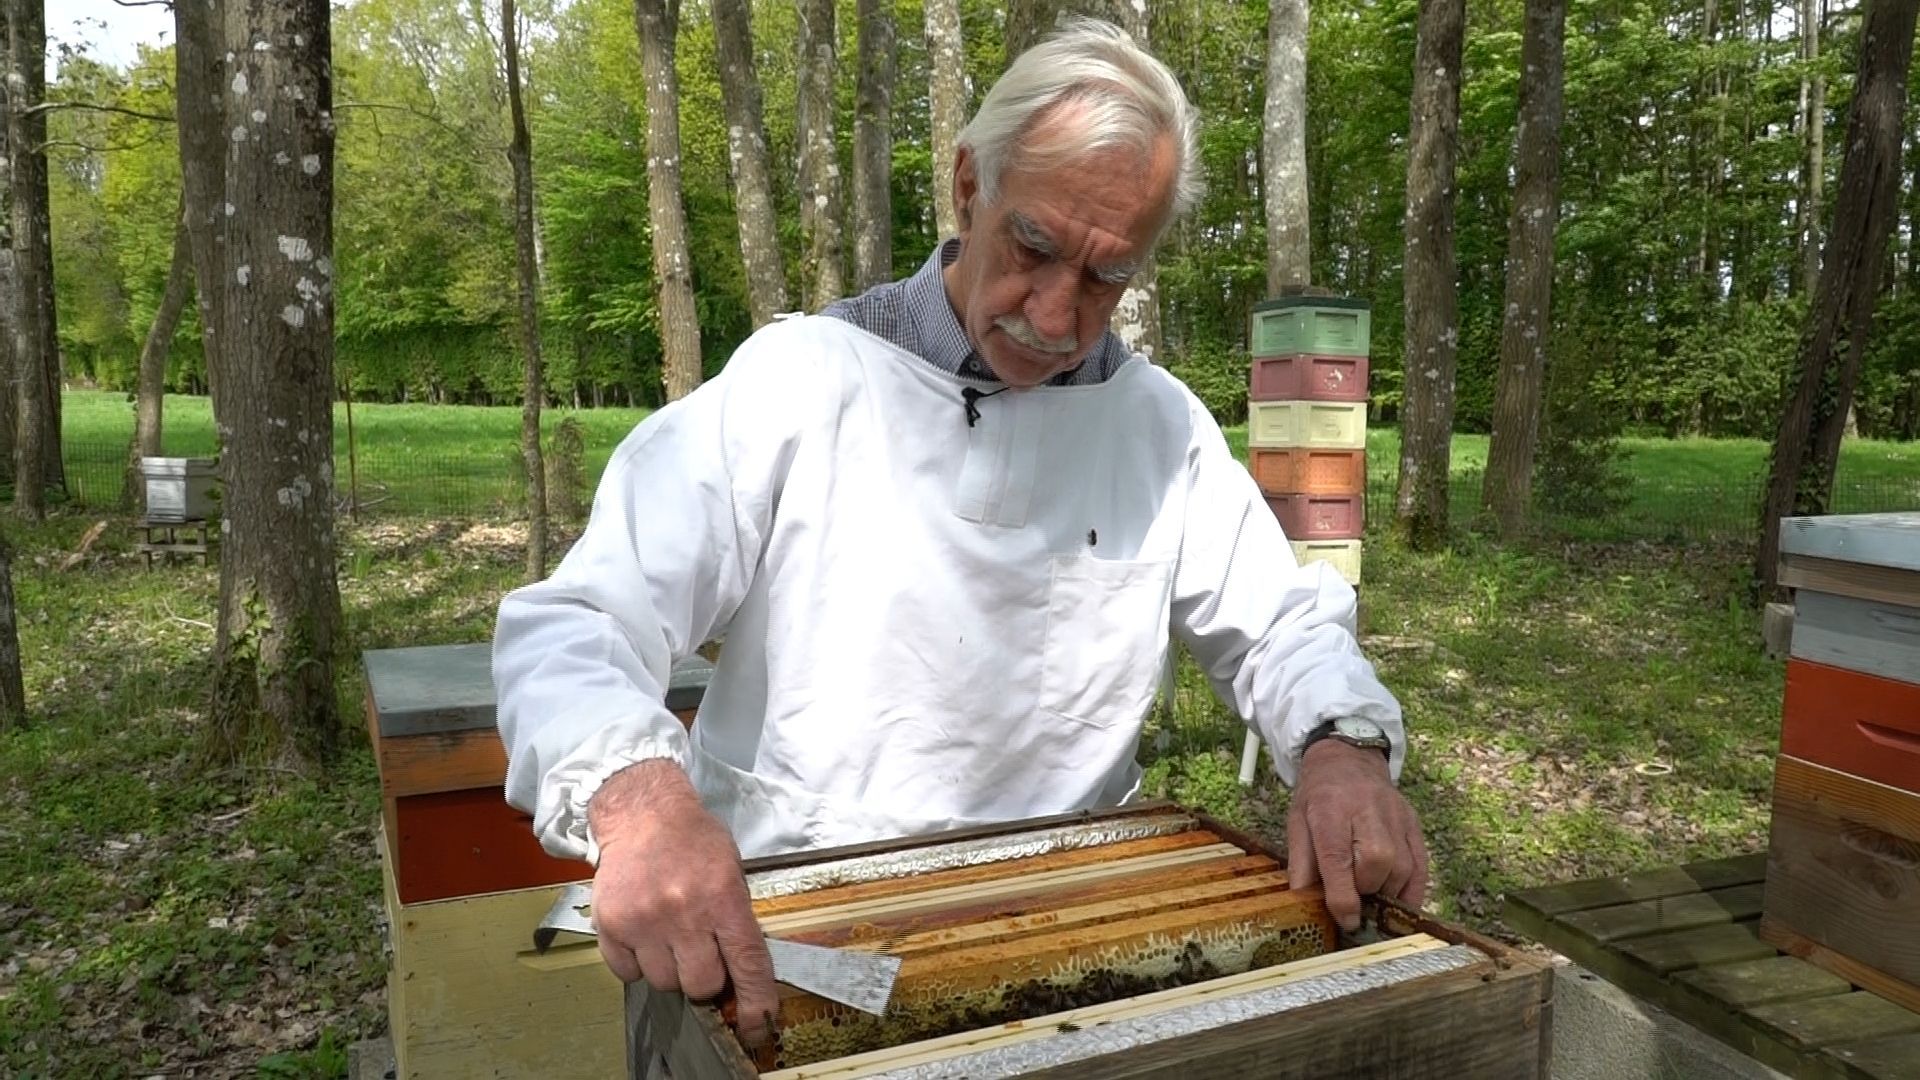 Mon voisin a des ruches : est-ce dangereux et que faire ?